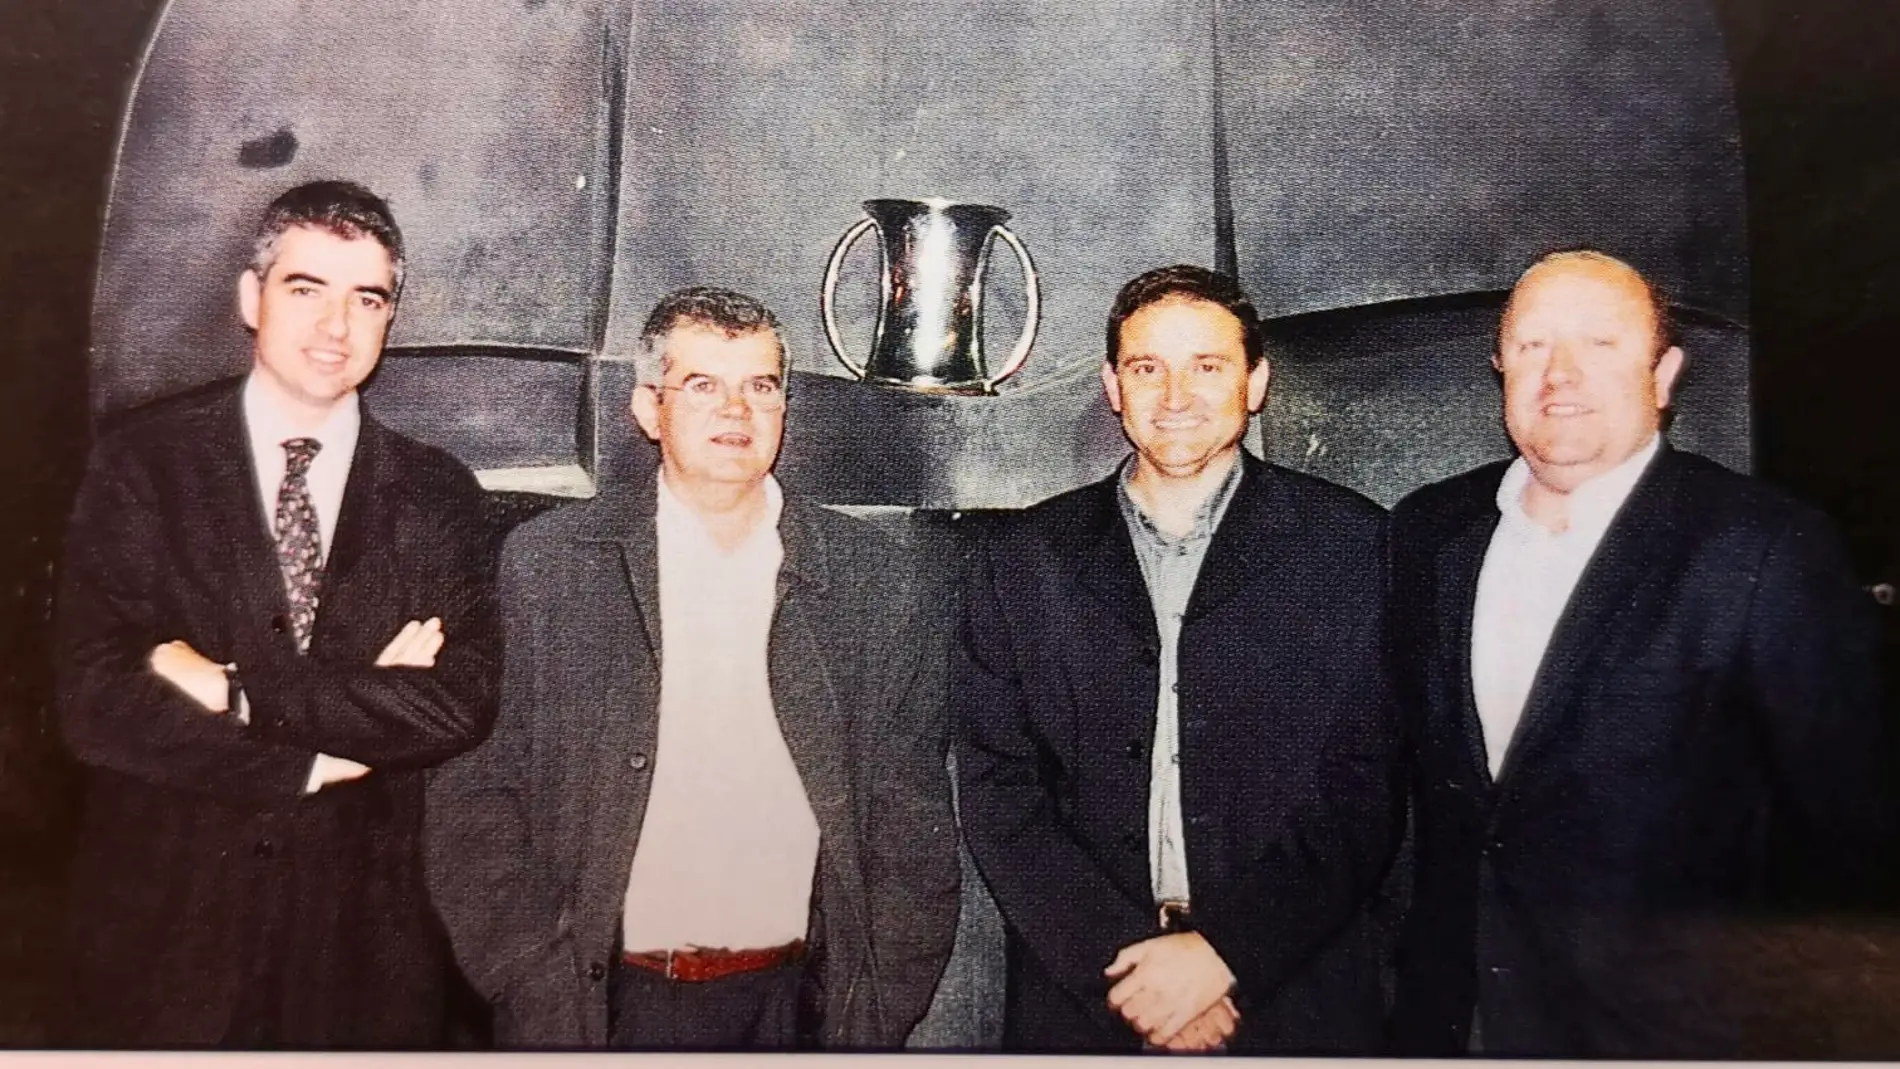 Rafa Bernabéu, Pepe García Parres, Víctor Martí y Juan Antonio Martínez, directivos del Club Voleibol Elche que lograron el título de campeones de Copa del Rey 2003 al frente del Club Voleibol Elche.